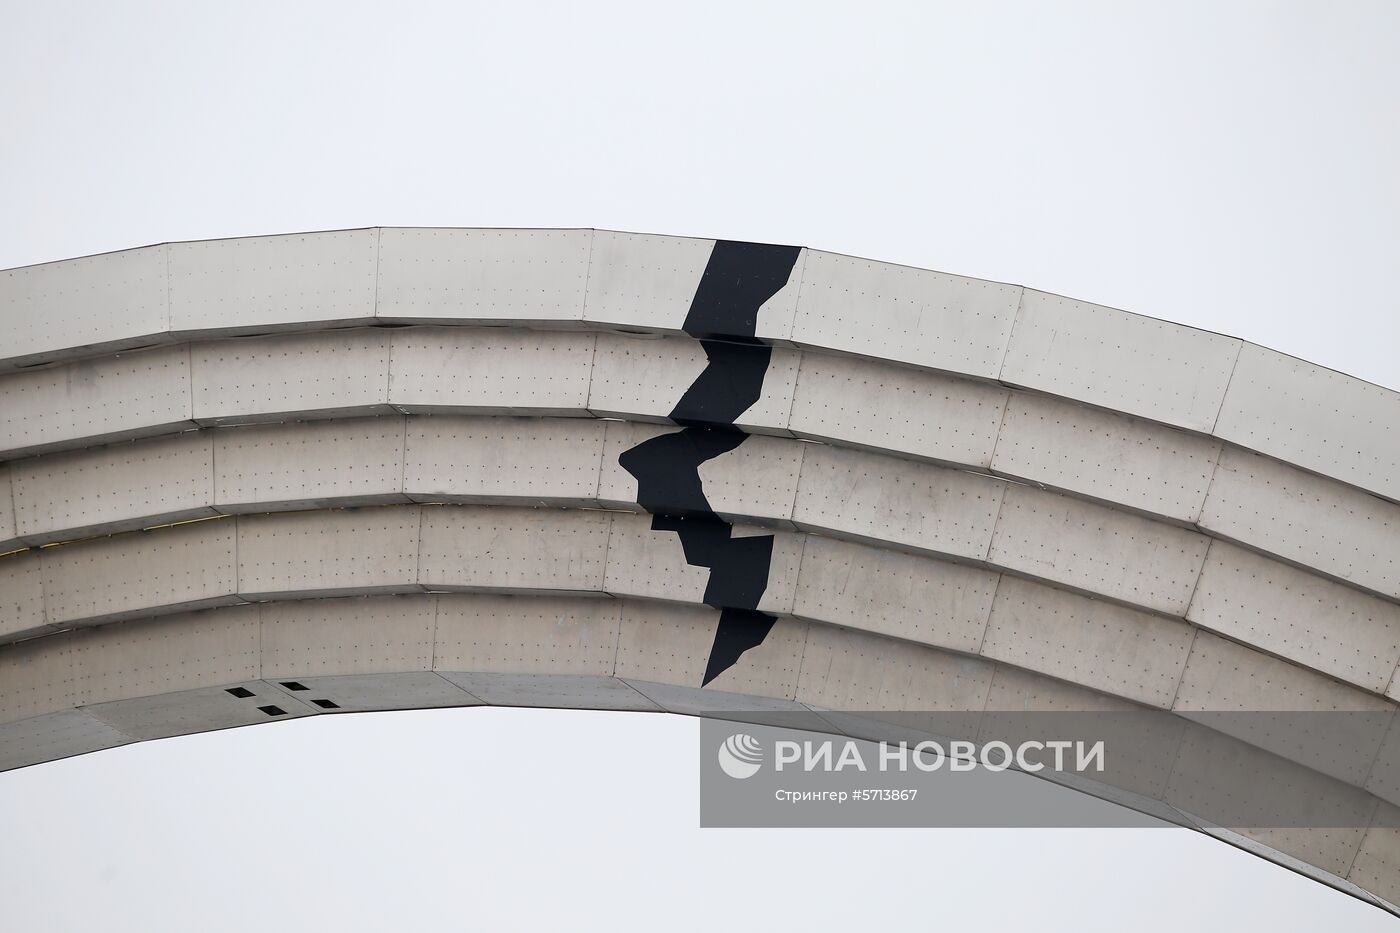 Изображение трещины наклеили на Арку дружбы народов в Киеве